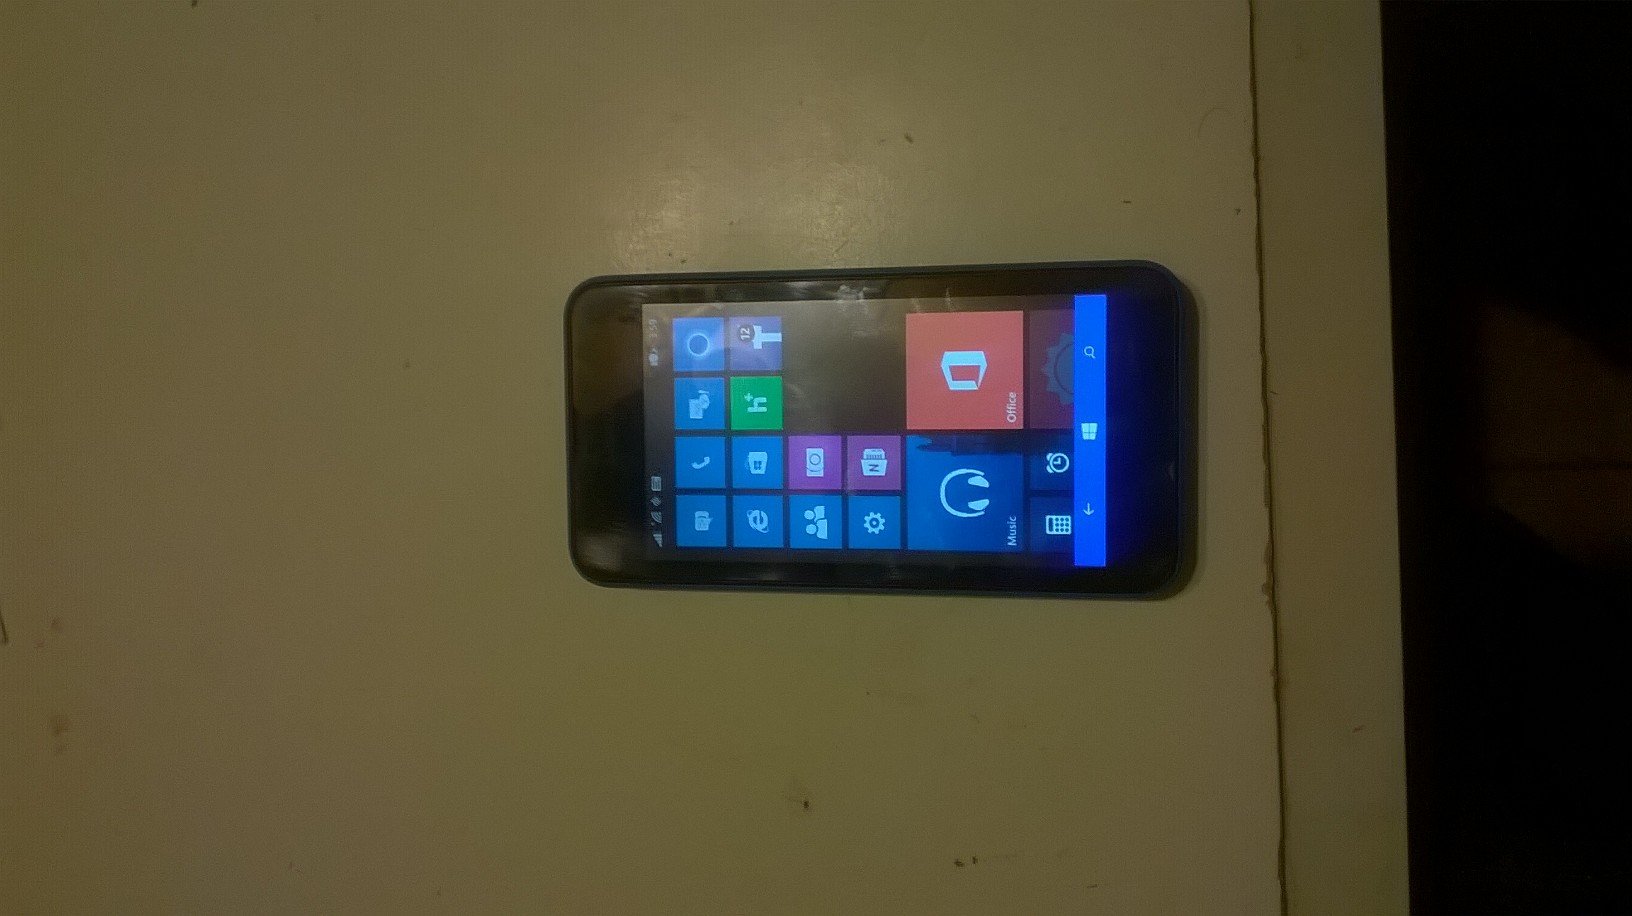 Nokia Lumia 530 Cricket Wireless